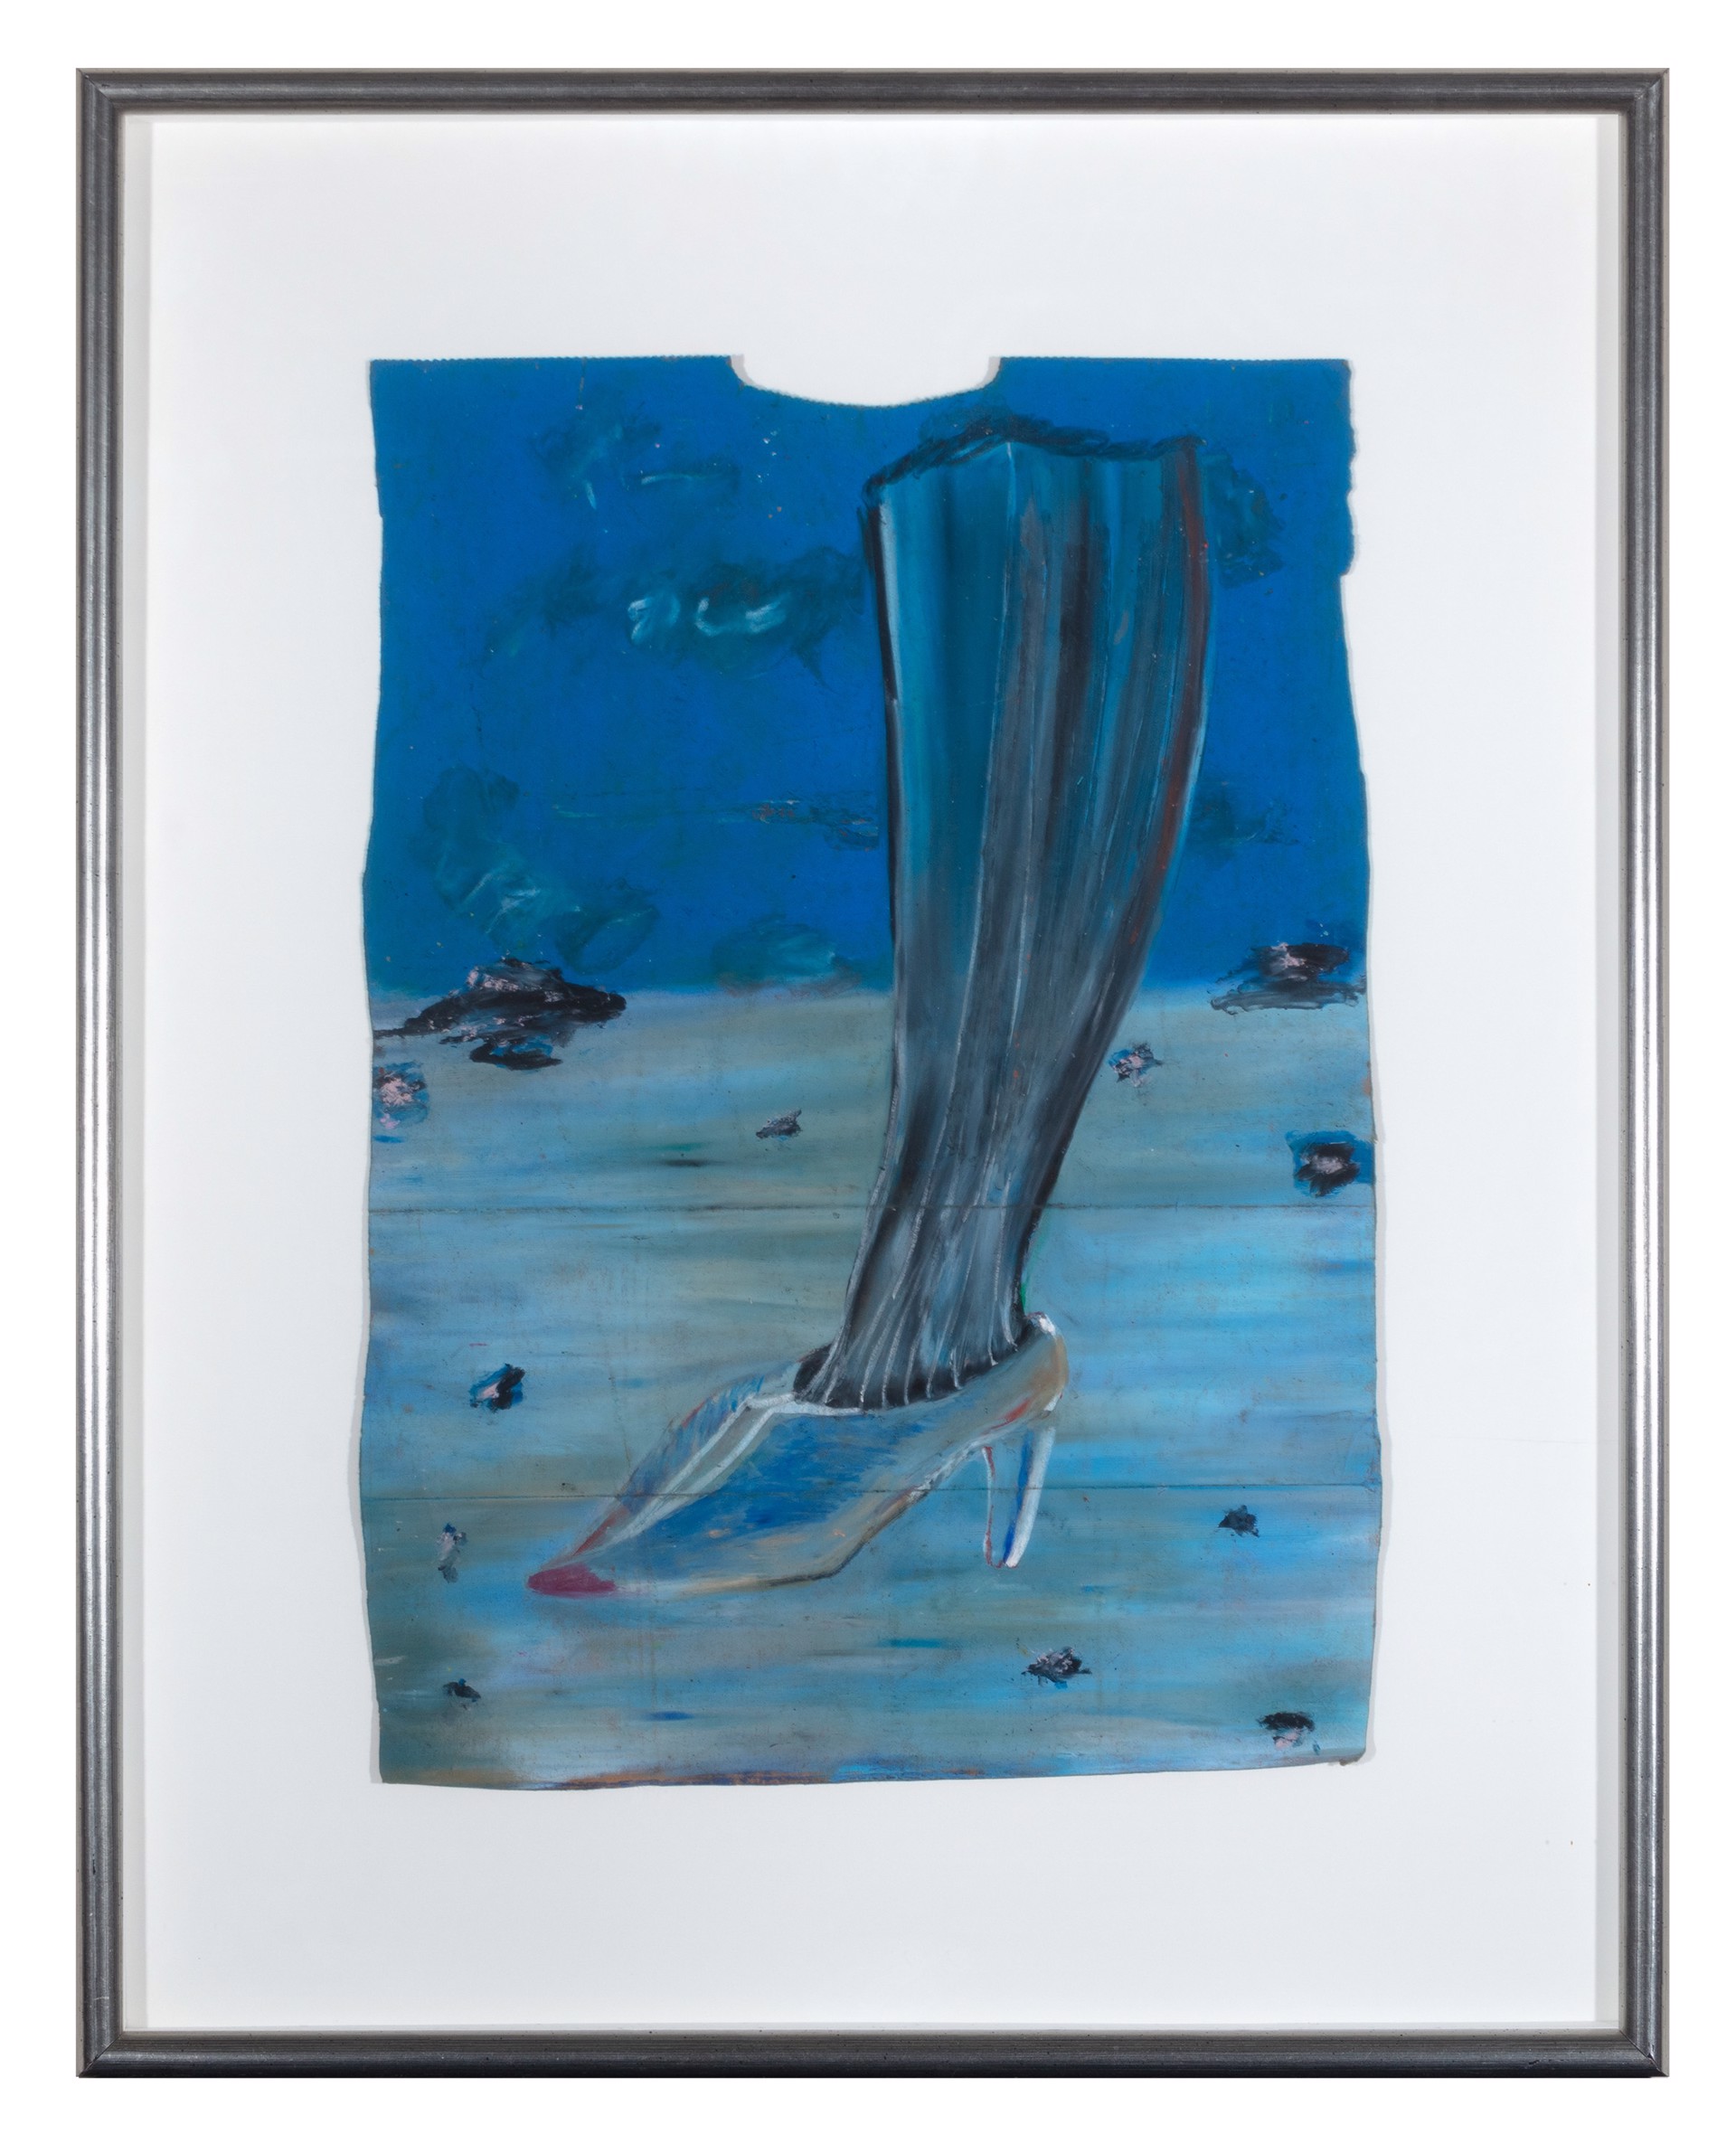 Leg & Shoe in Blue by Reginald K. Gee